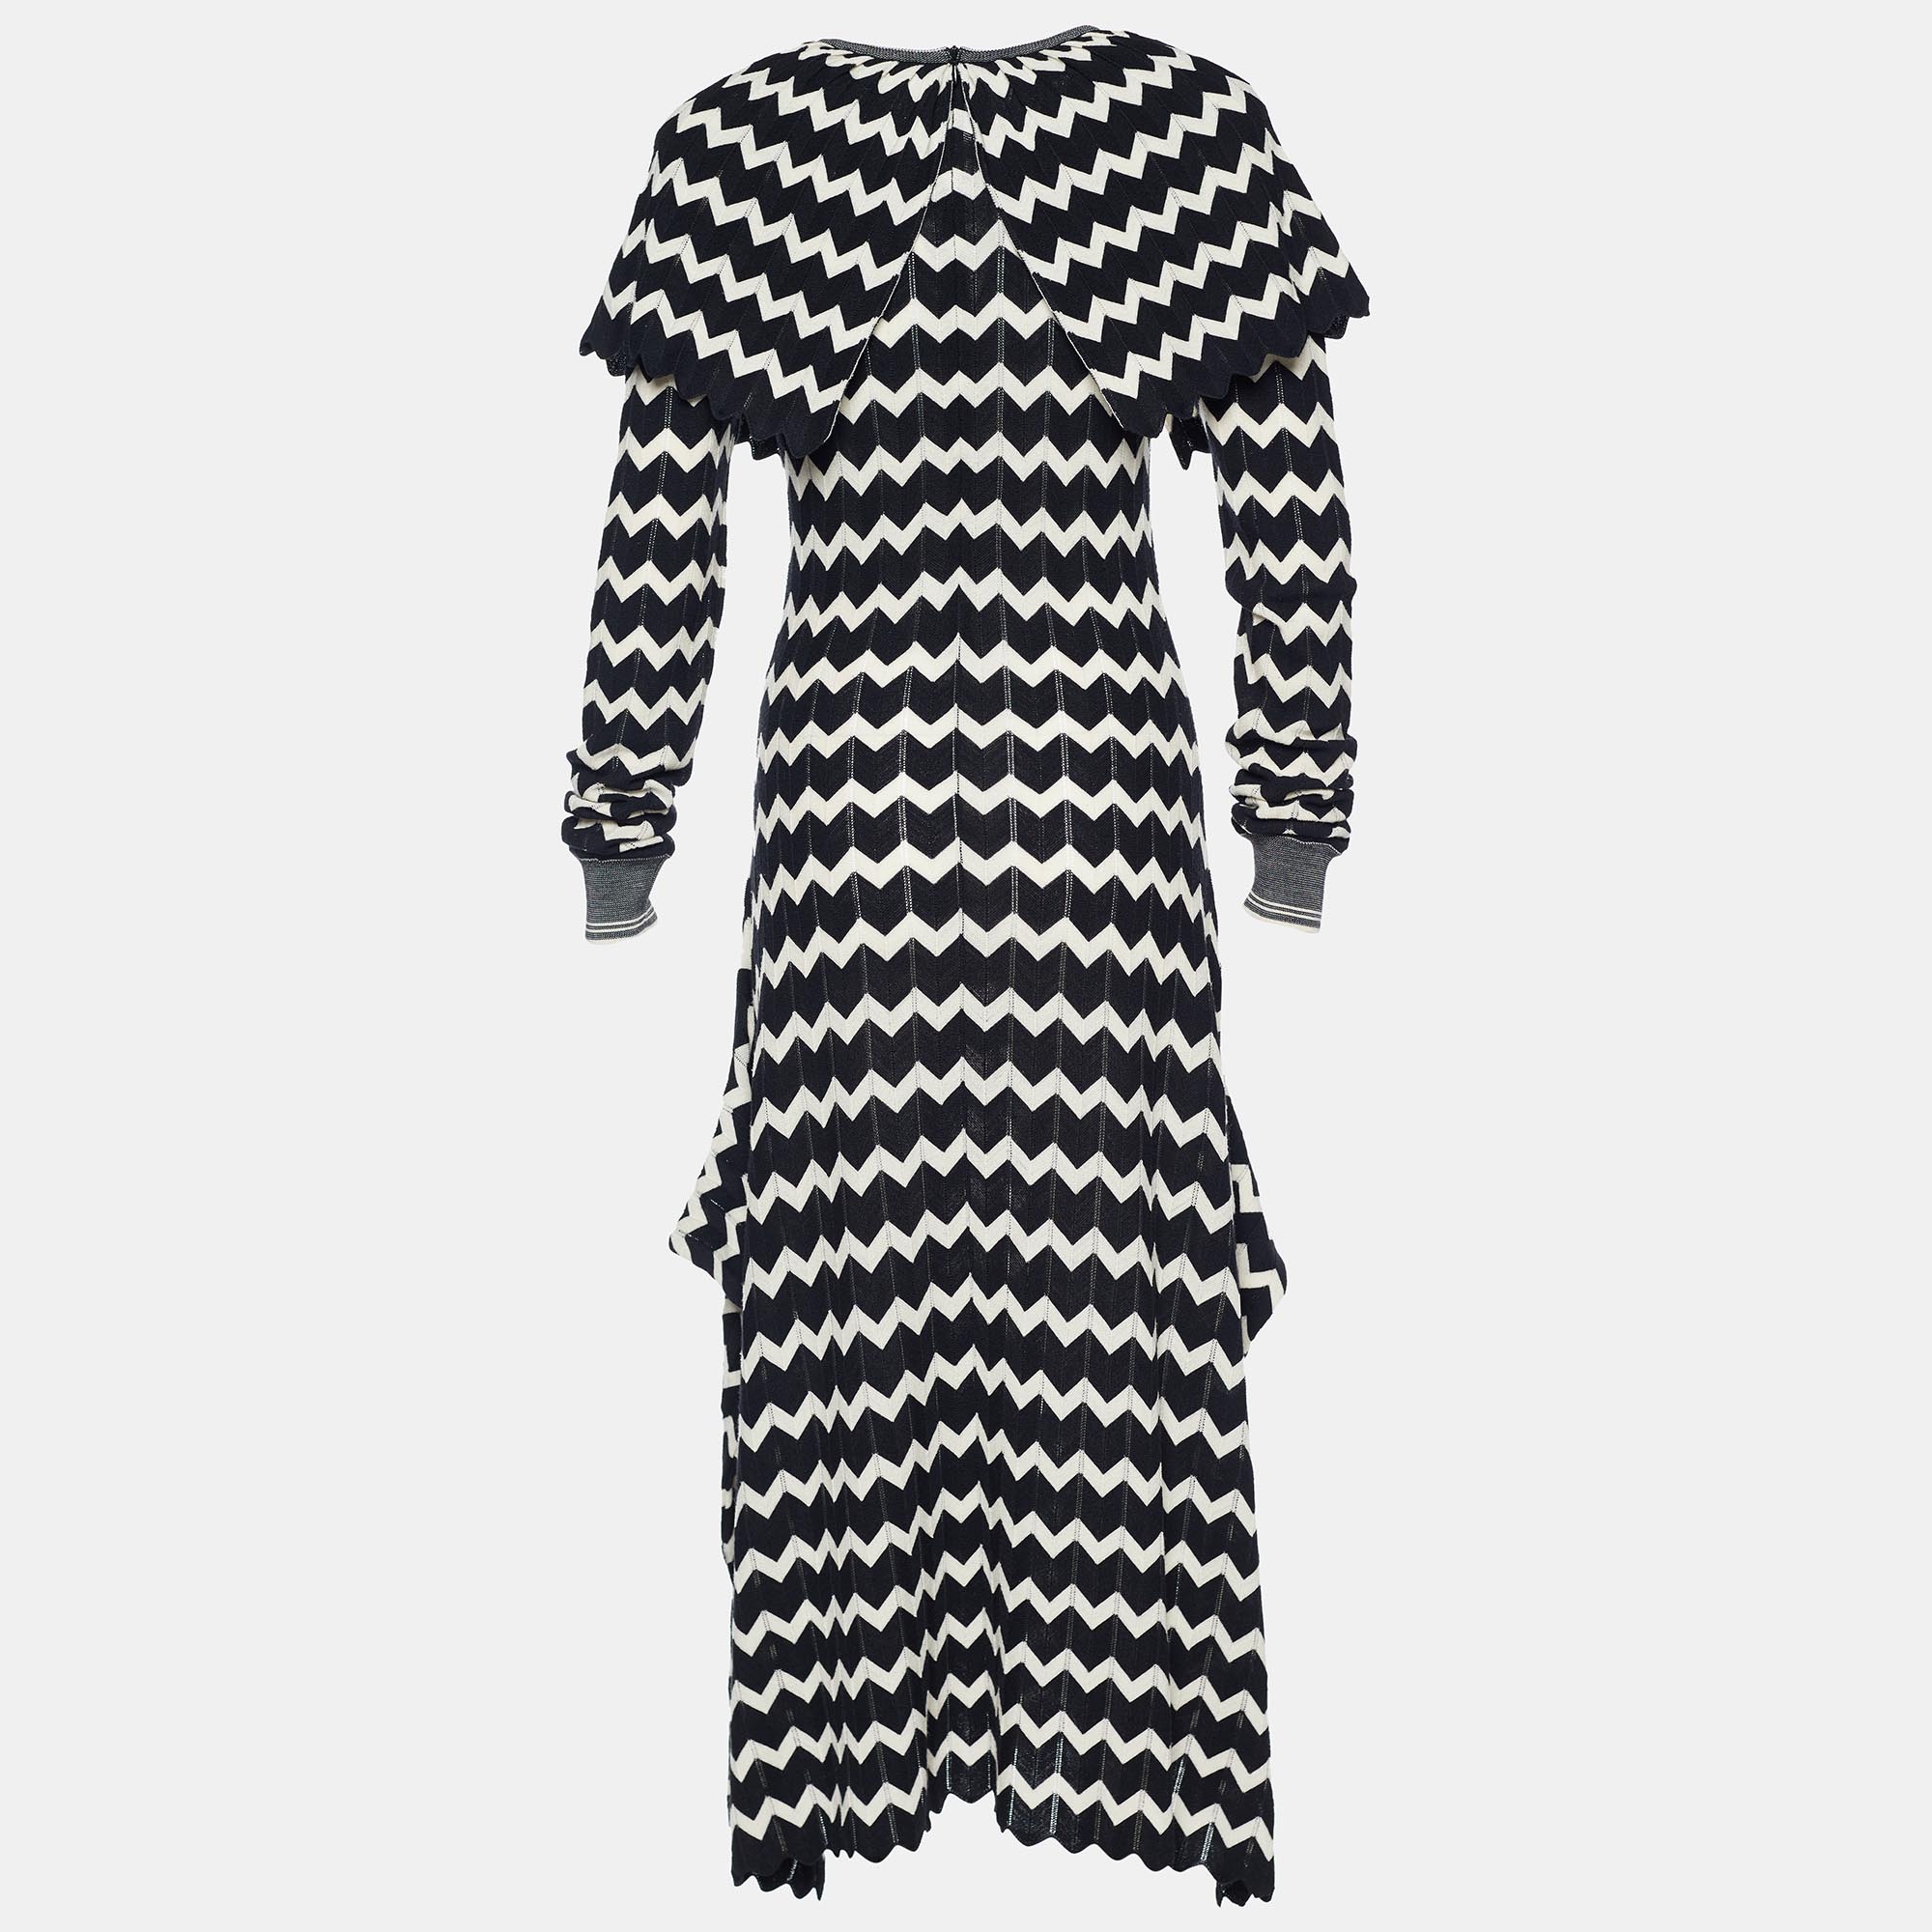 

Stella McCartney Monochrome Patterned Wool Knit Draped Dress, Black